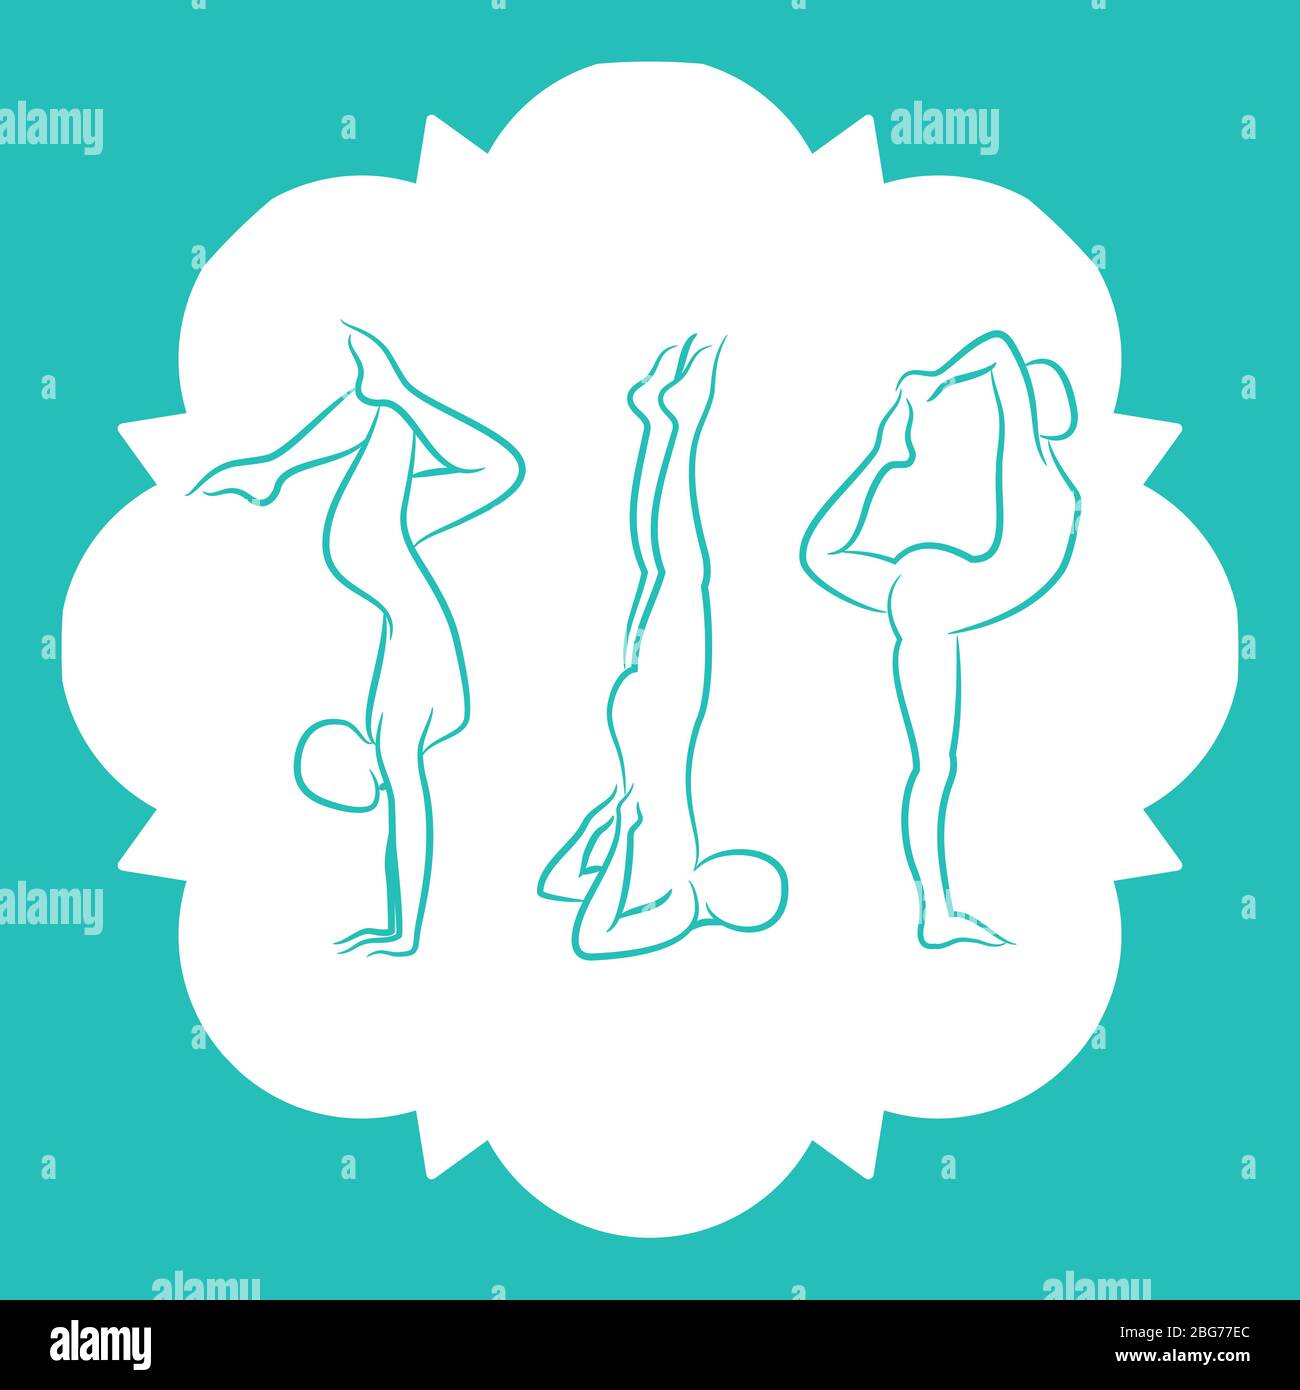 Pilates, fitnes, ligne de yoga silhouettes pose de set. Illustration vectorielle Illustration de Vecteur